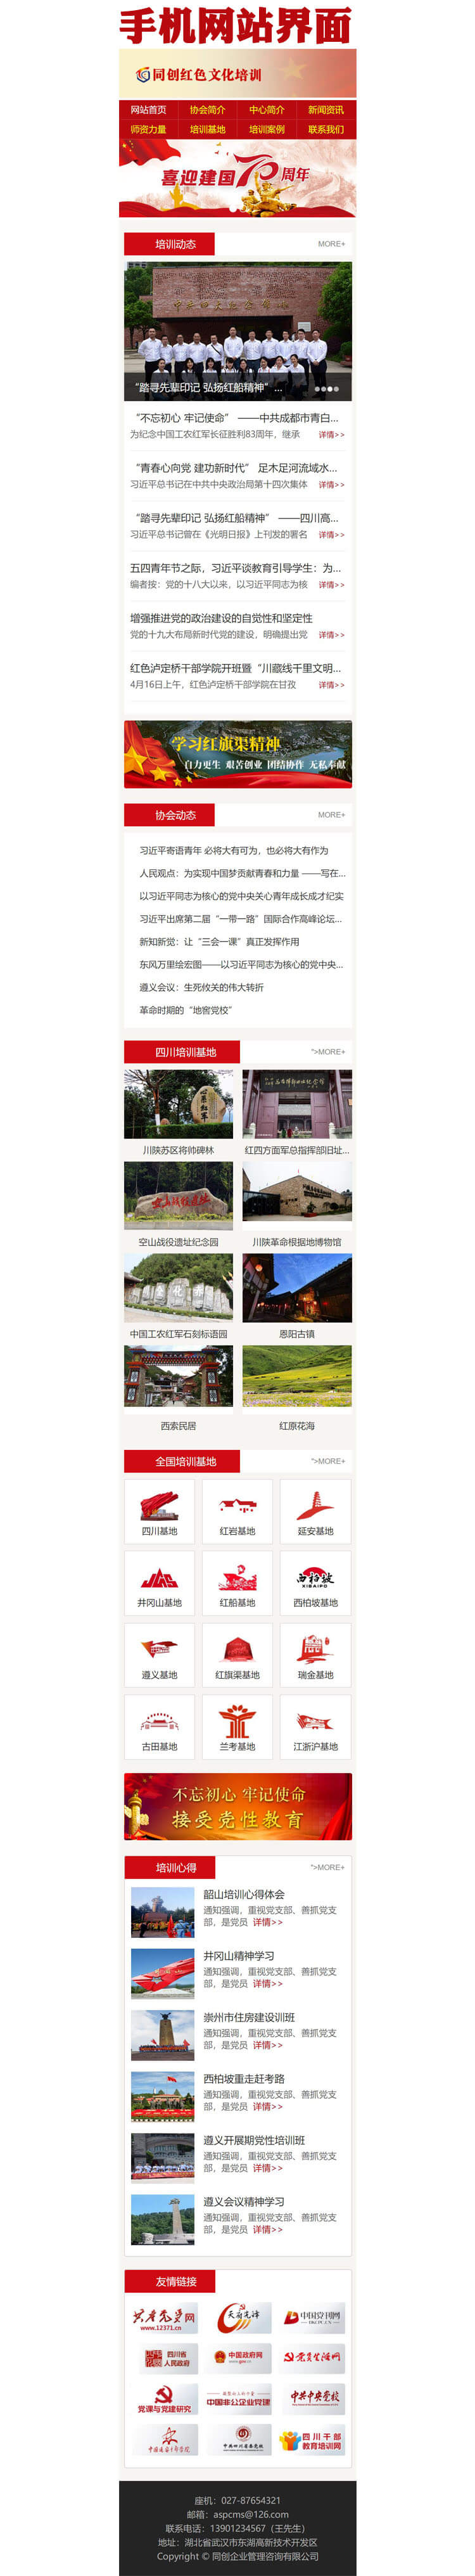 党员培训中心红色教育网站源码程序-PT002-3